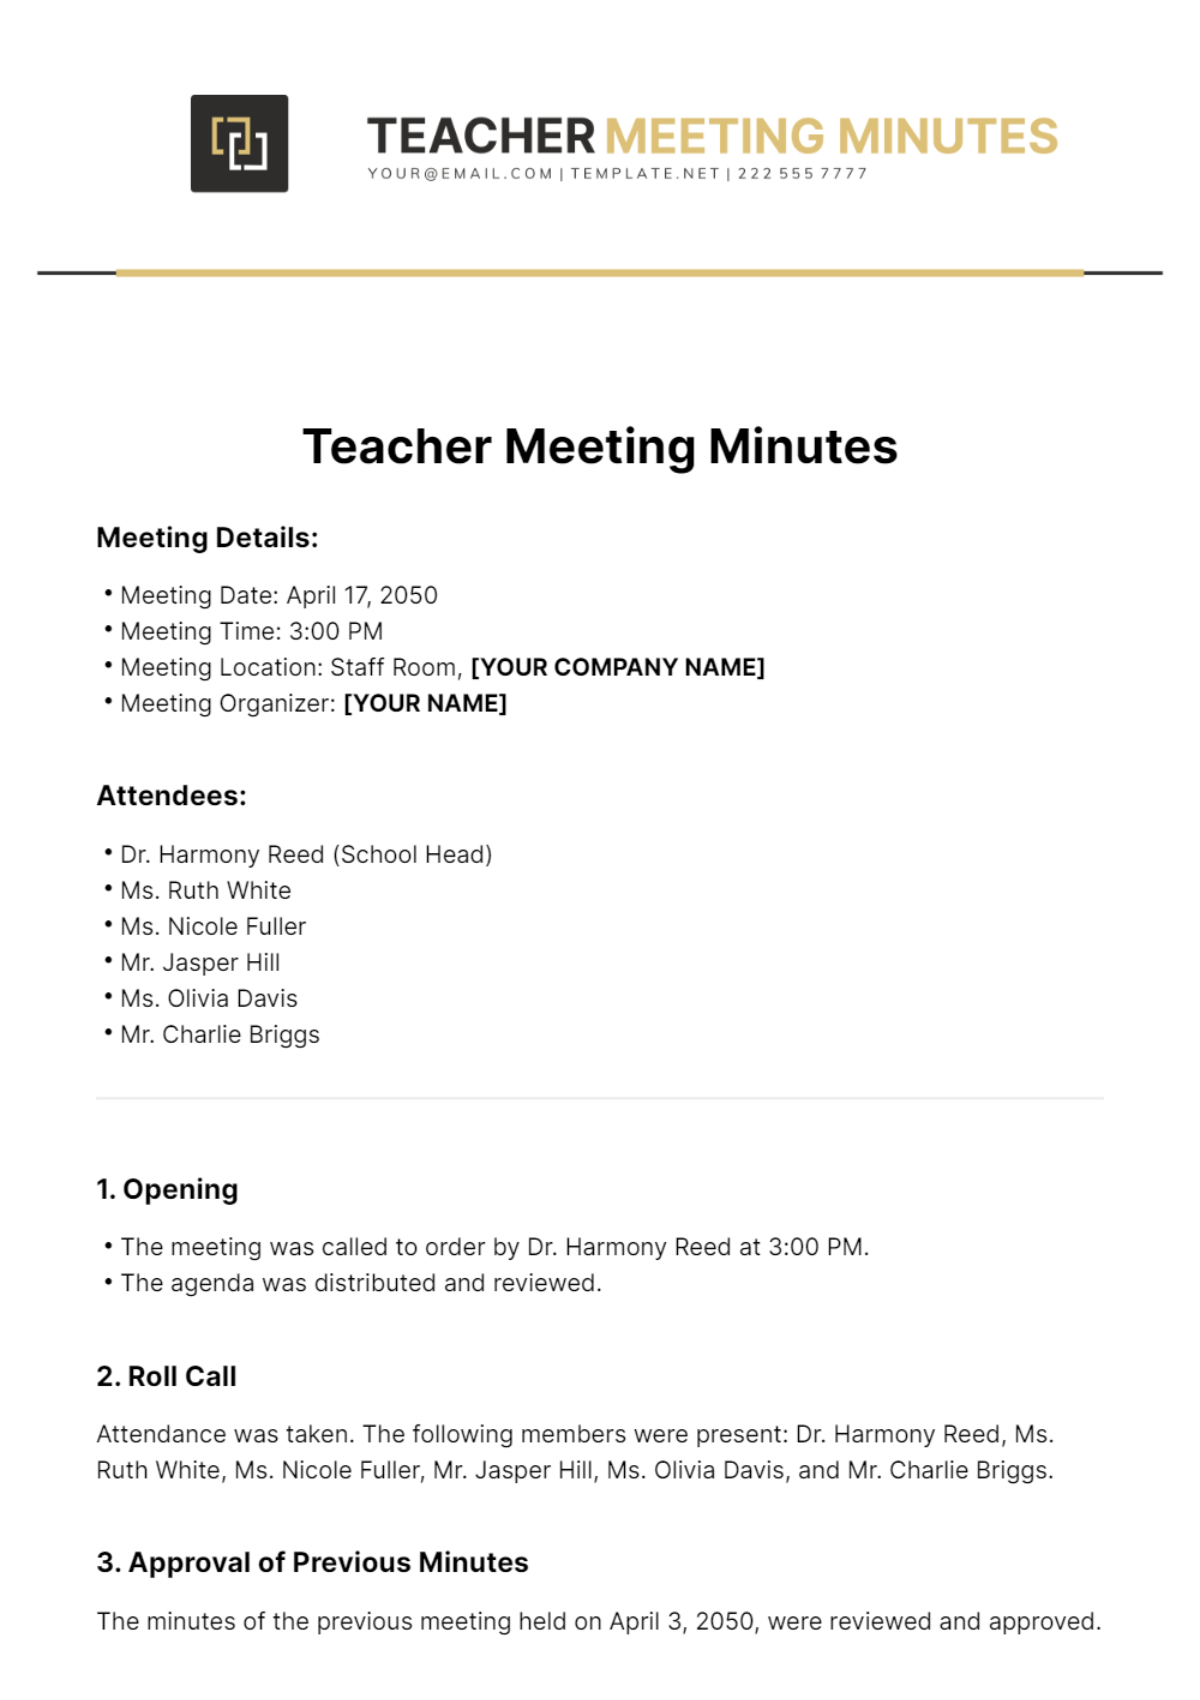 Teacher Meeting Minutes Template